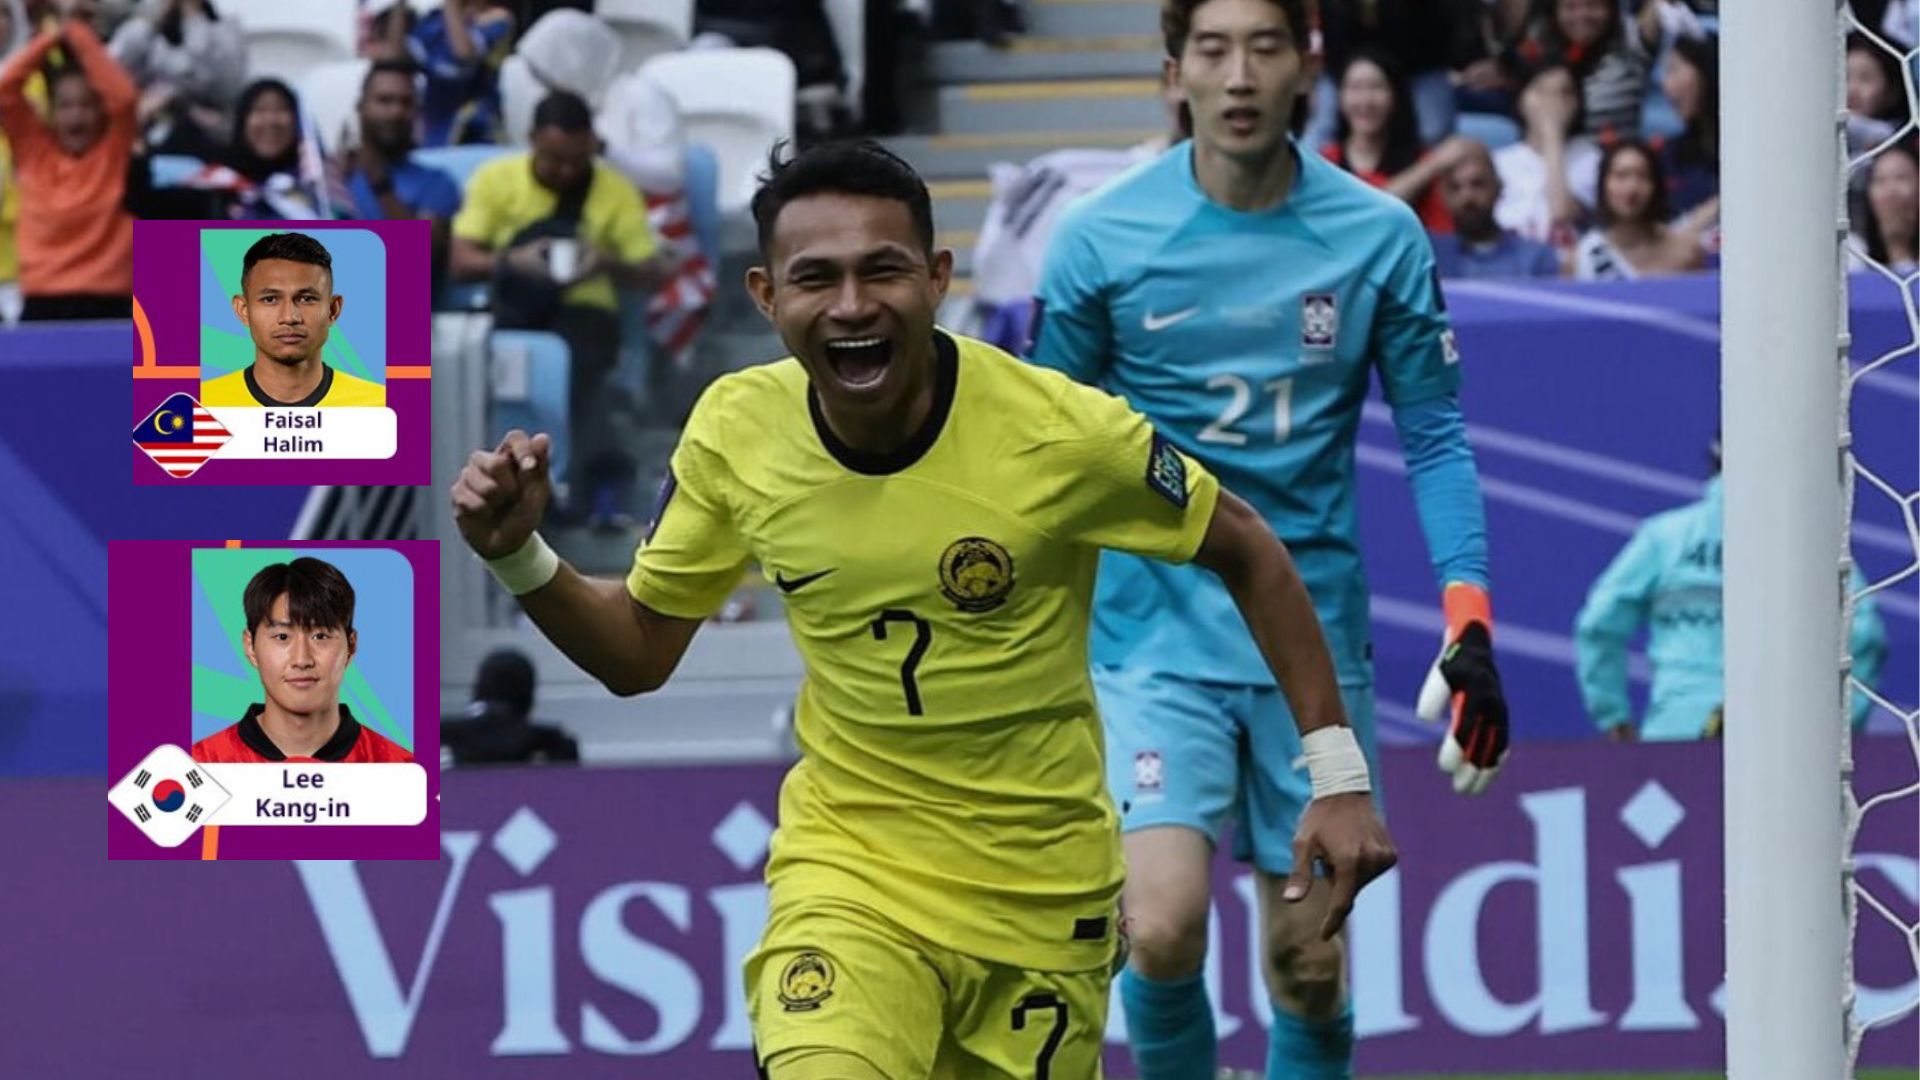 AFC Letak Faisal Halim Sebaris Lee Kang-in Sebagai Pemain Terbaik ‘Matchday 3’